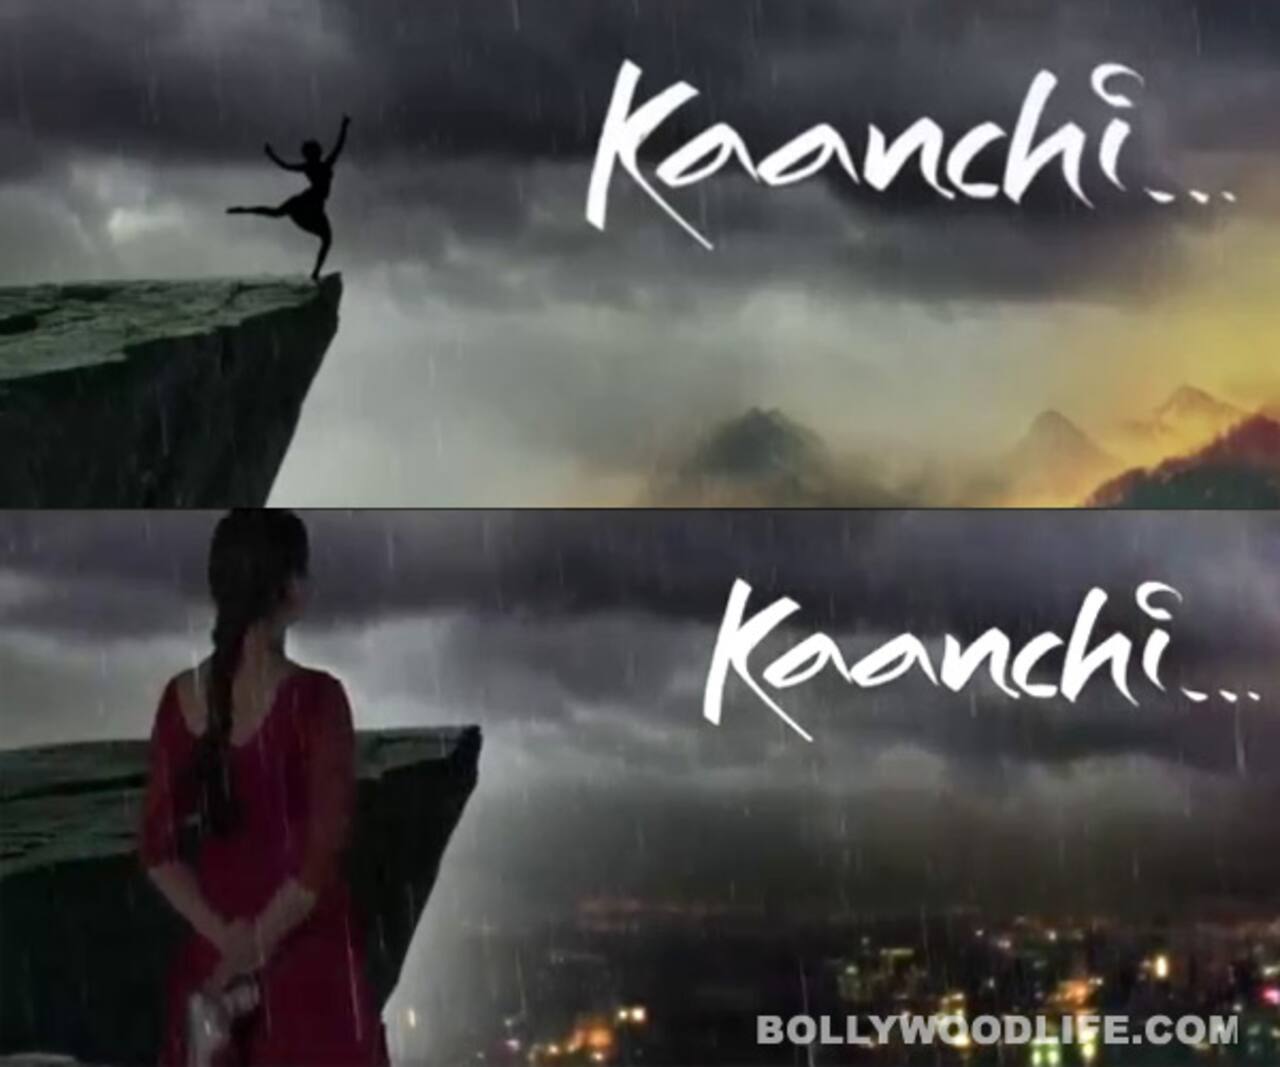 Kaanchi teaser: Subhash Ghai tries to maintain suspense around his leading lady Mishti